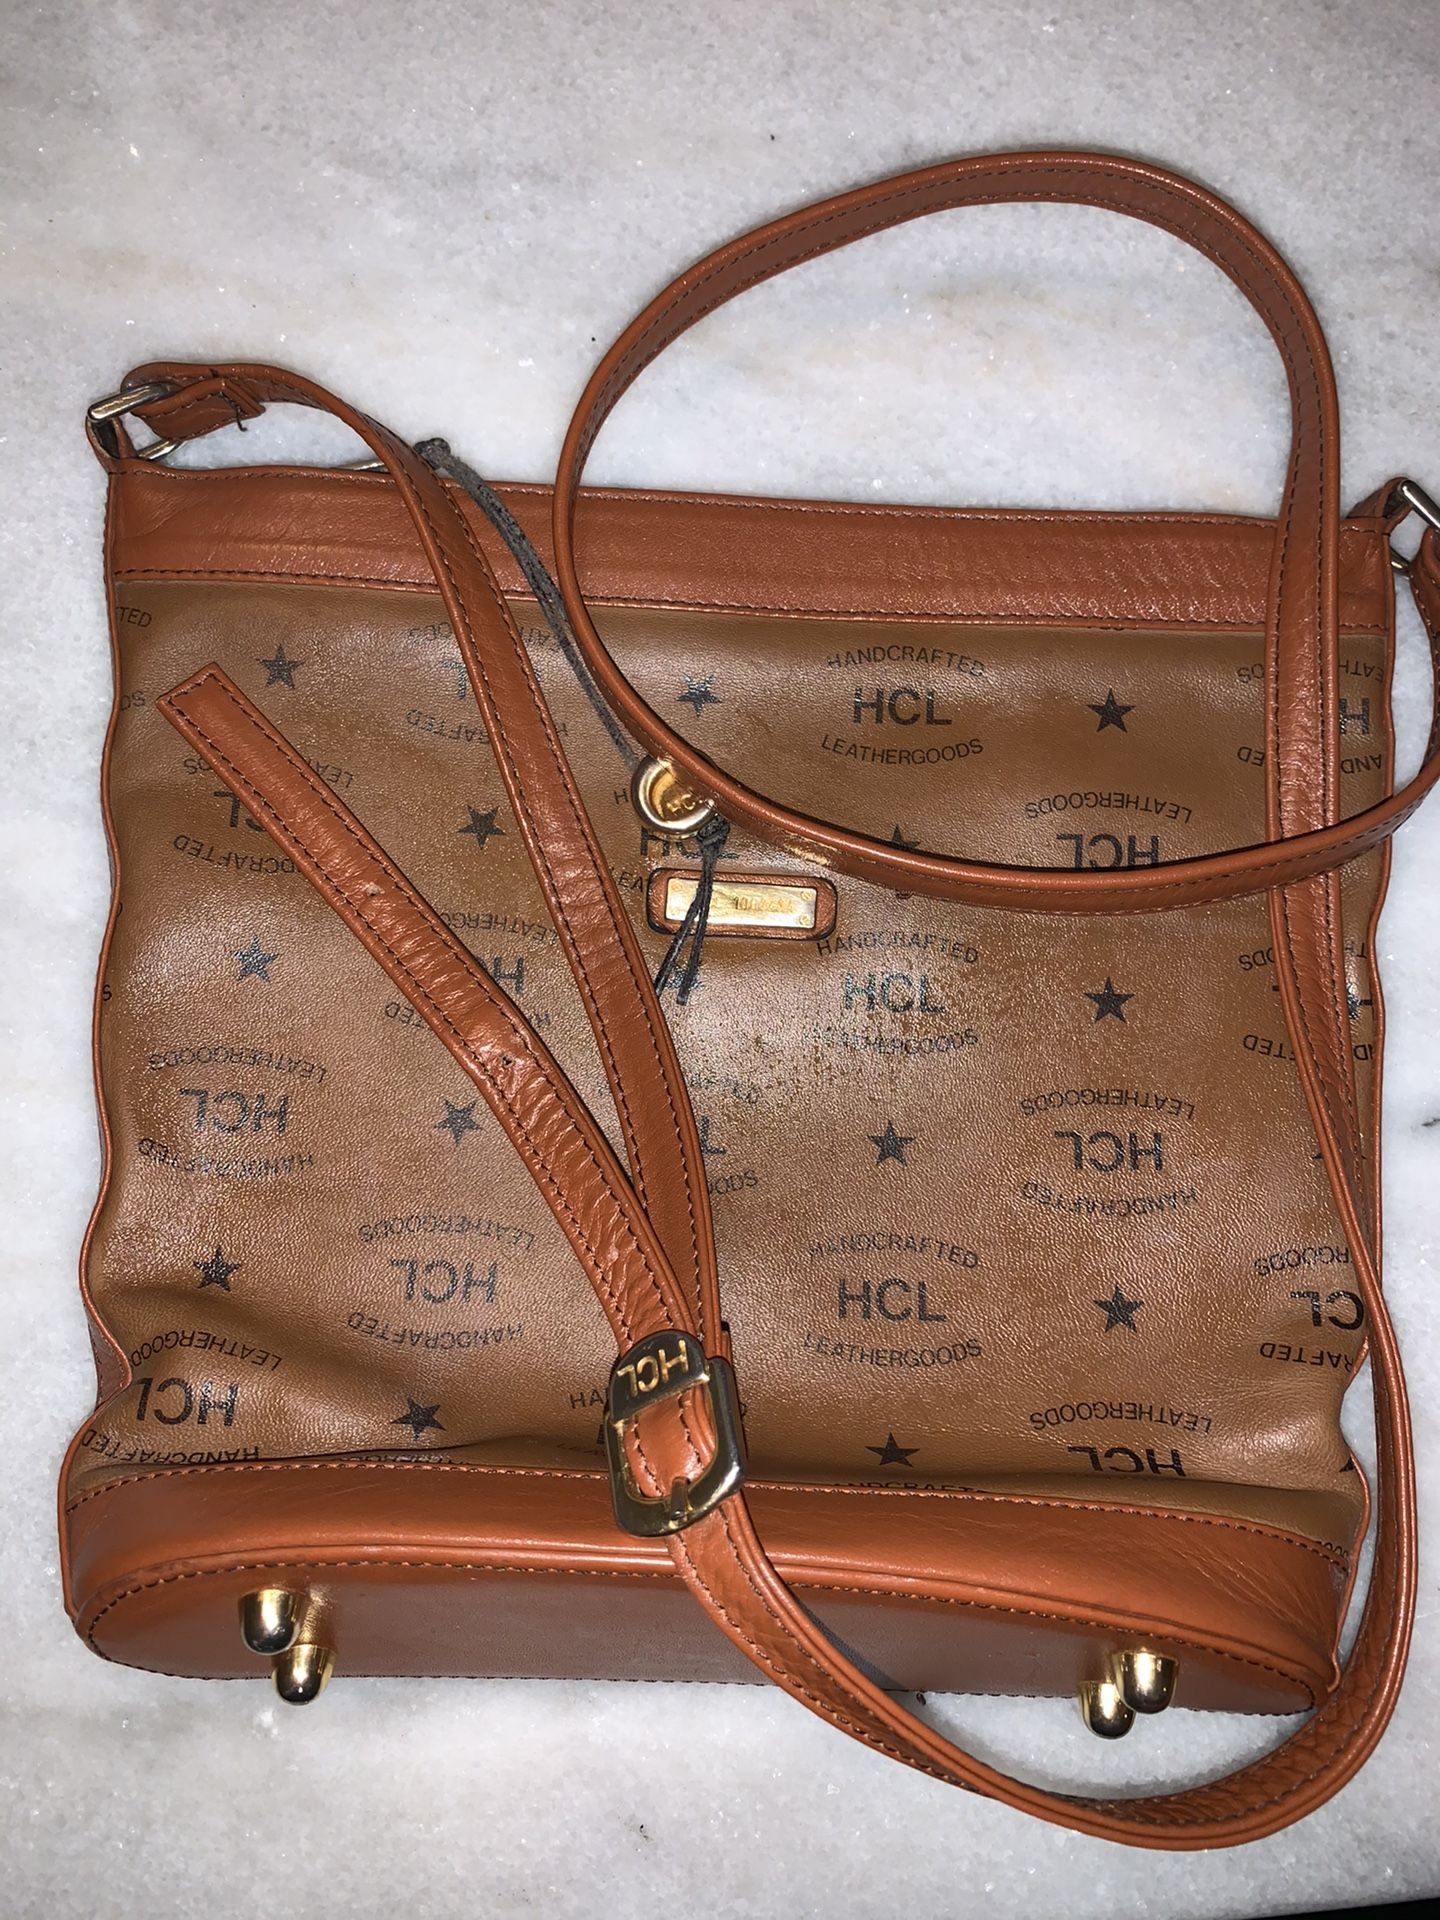 Authentic European HCL messenger bag